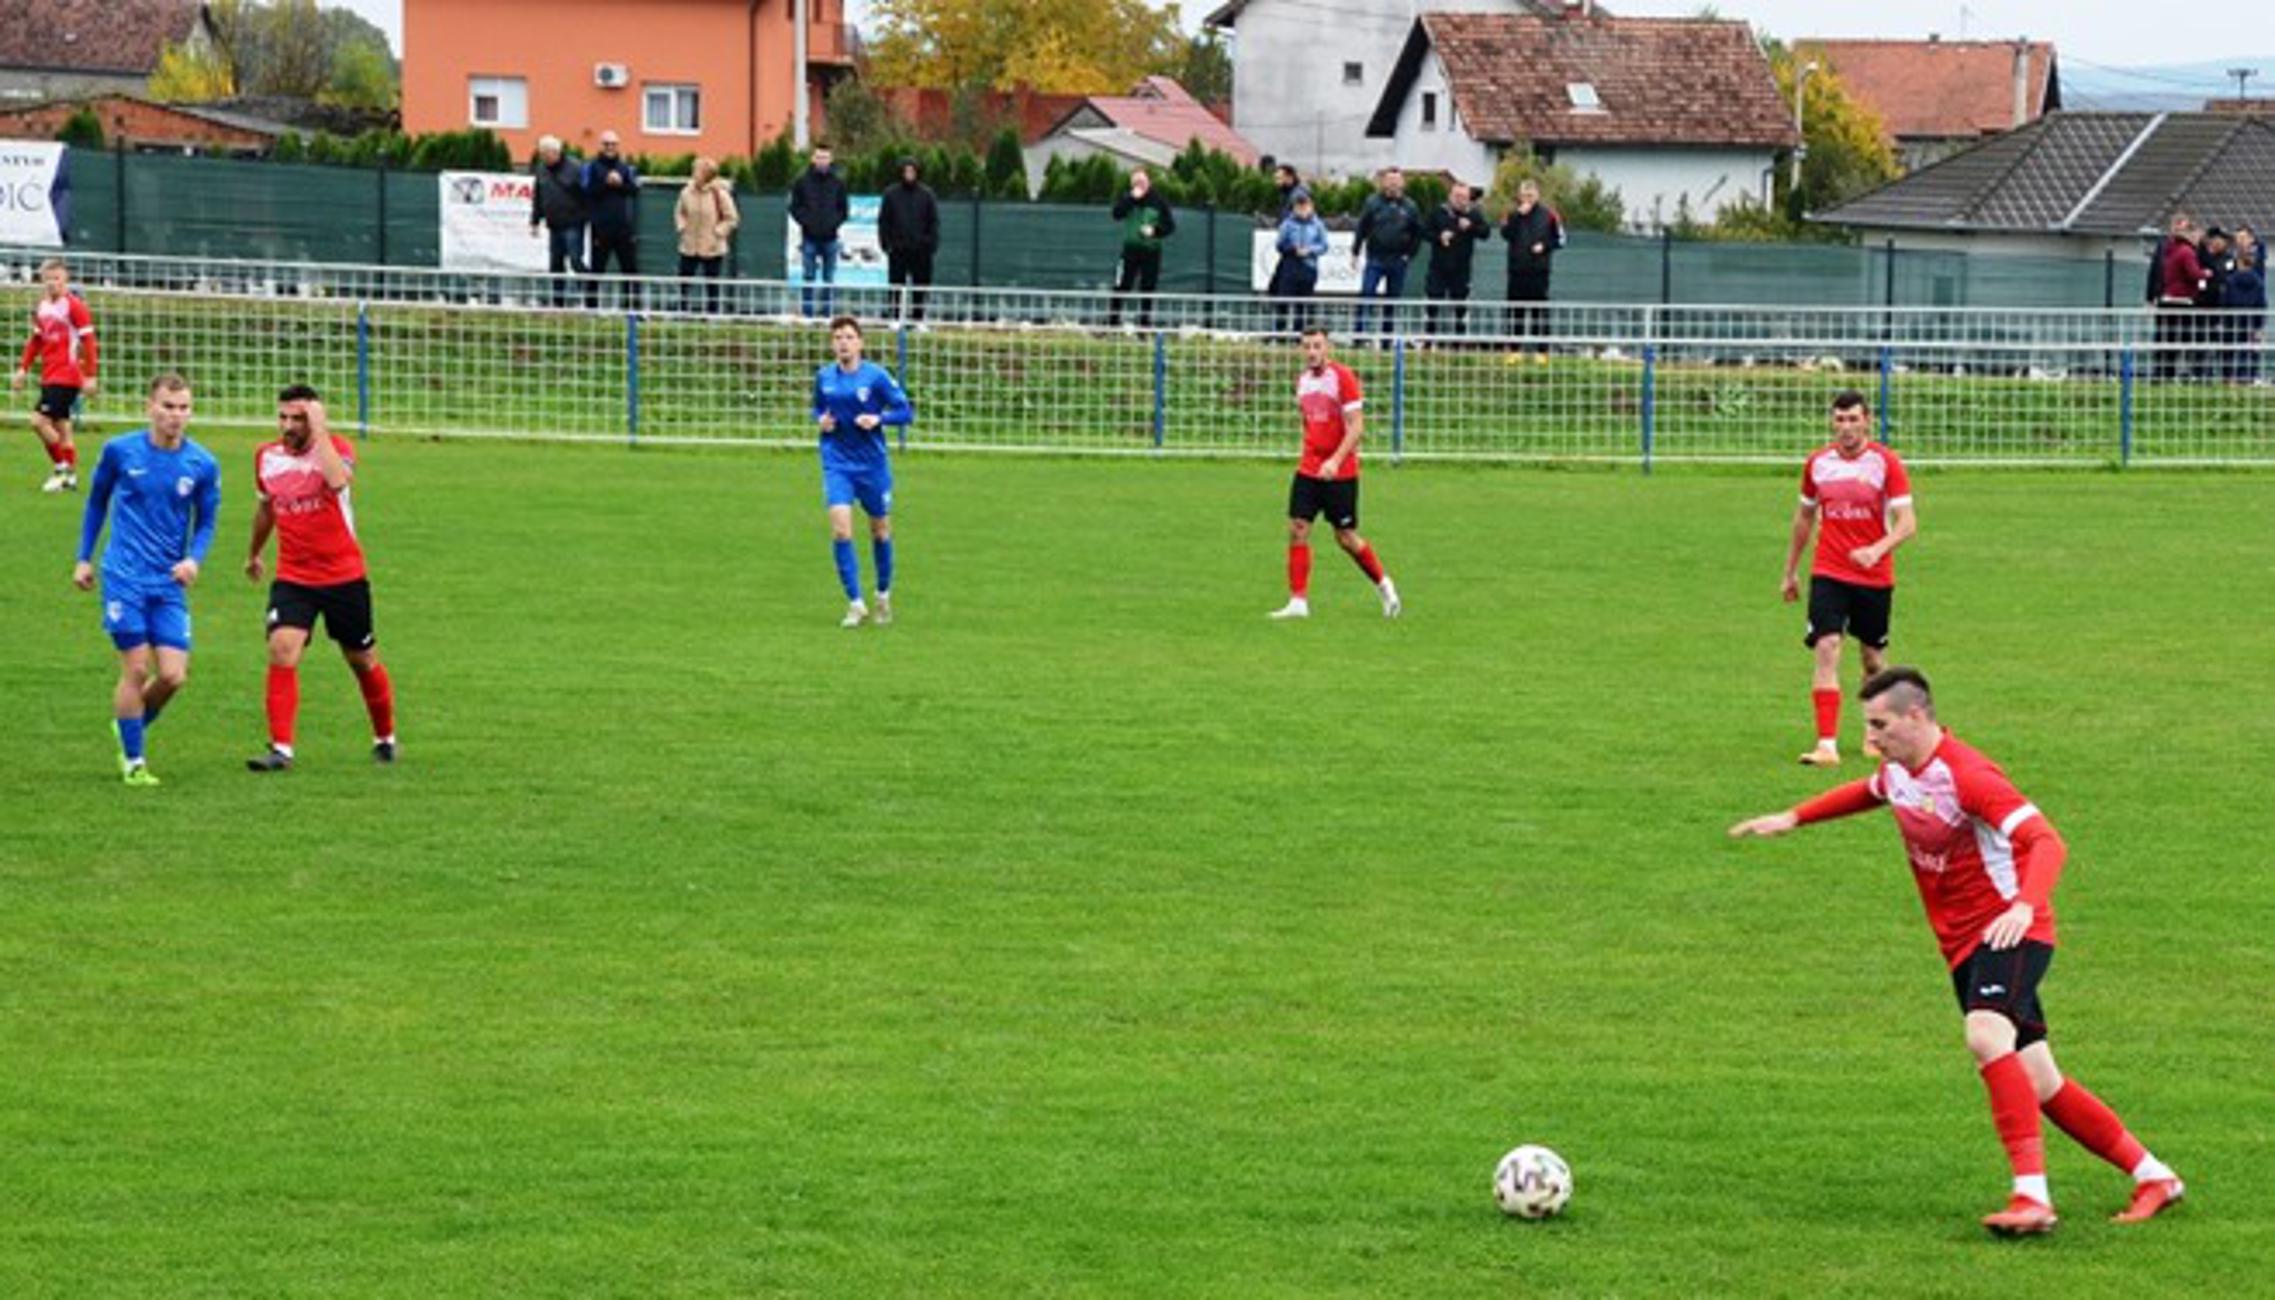 Iz utakmice Slavonac (crveni) - Slavonija odigrane u subotu u Bukovlju.